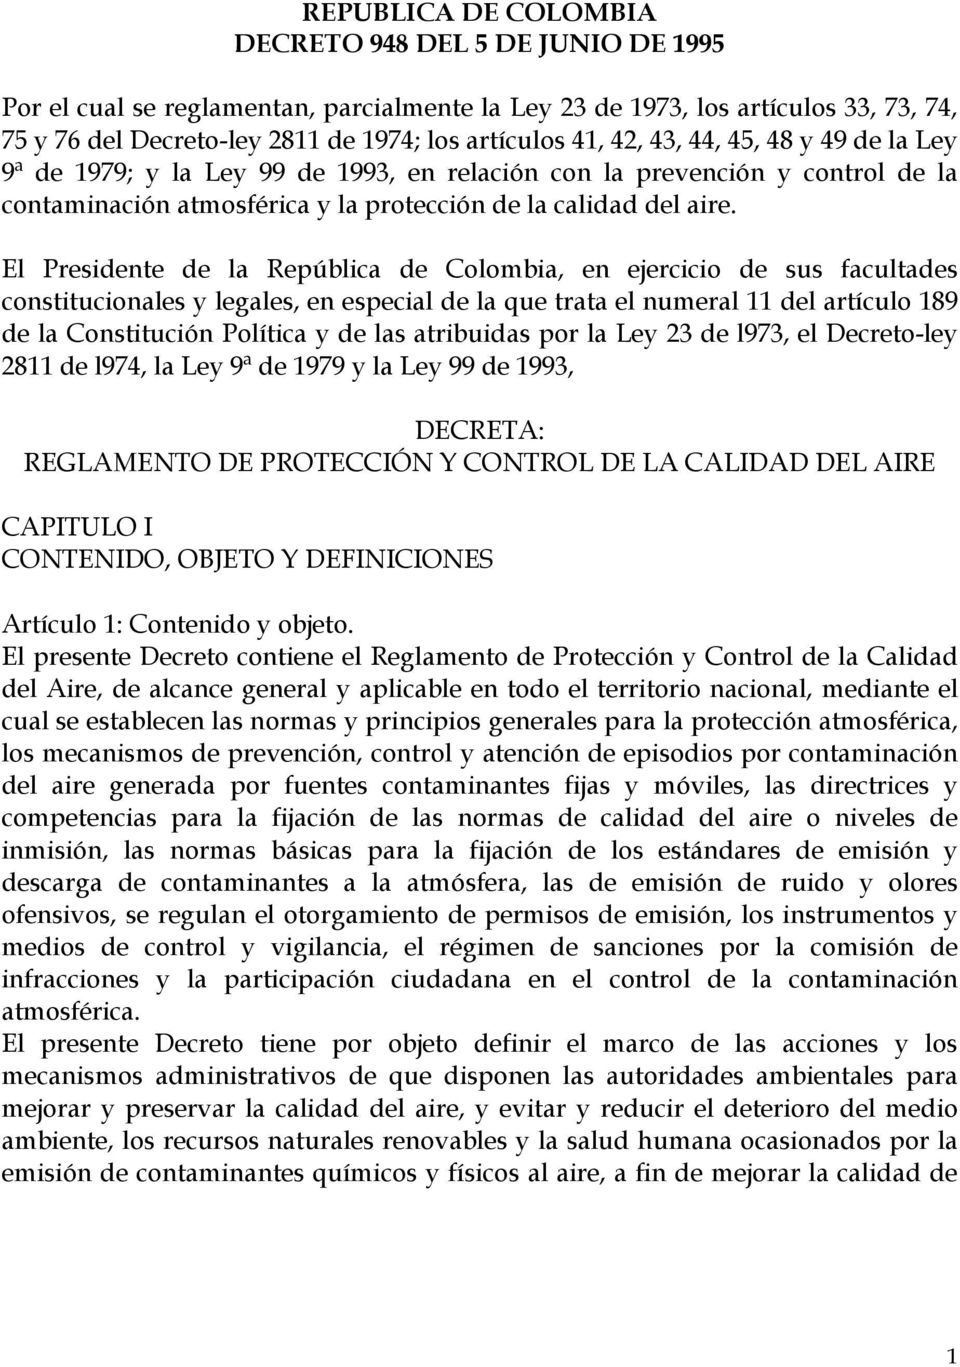 El Presidente de la República de Colombia, en ejercicio de sus facultades constitucionales y legales, en especial de la que trata el numeral 11 del artículo 189 de la Constitución Política y de las